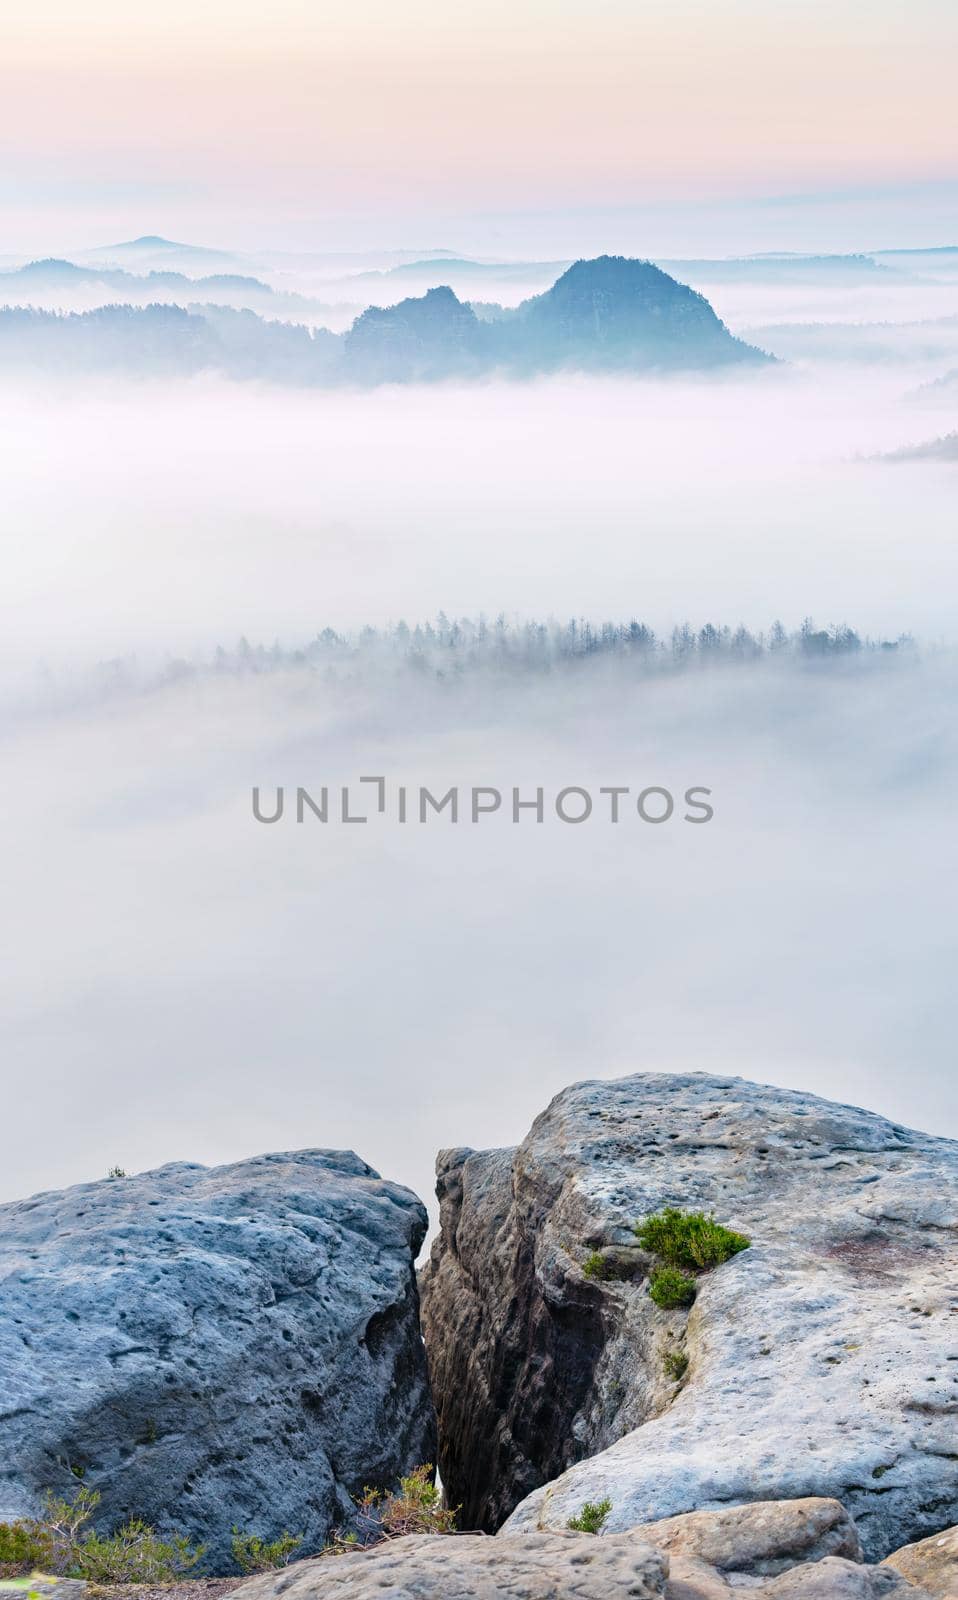 Mountain top rock, sleepy misty landscape bellow under morning mist. by rdonar2